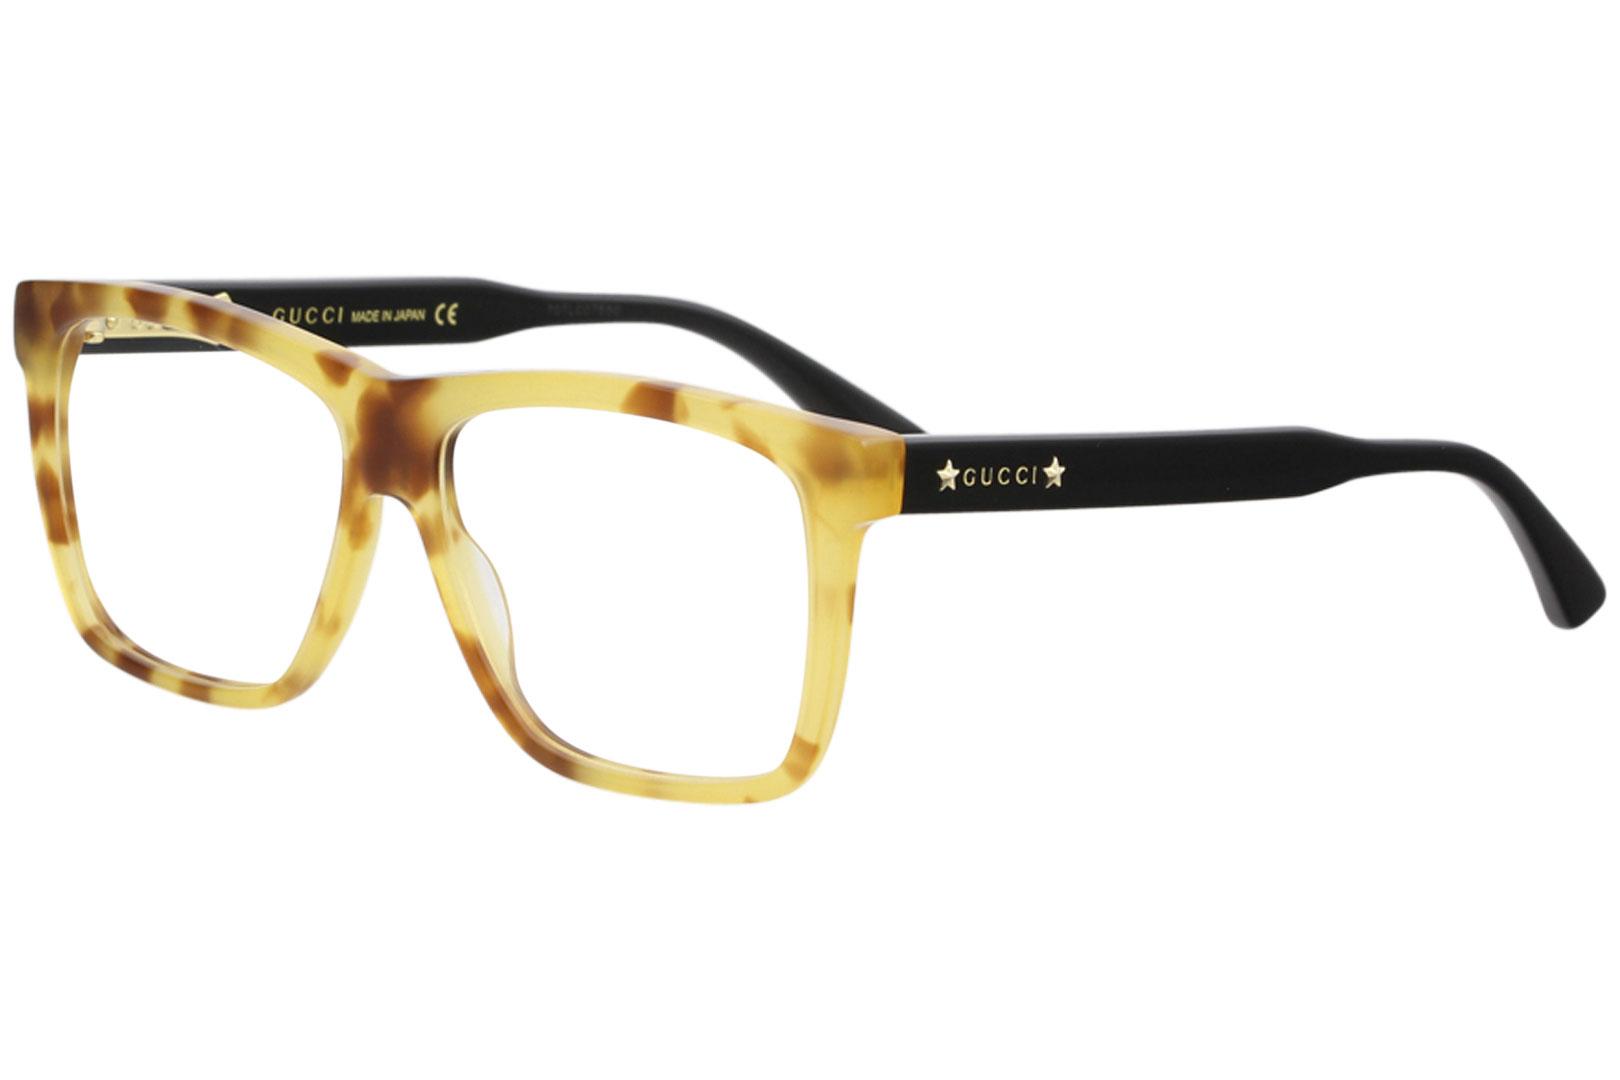 Gucci Men's Eyeglasses GG0268O GG/0268/O Full Rim Optical Frame - Brown - Lens 55 Bridge 14 Temple 145mm